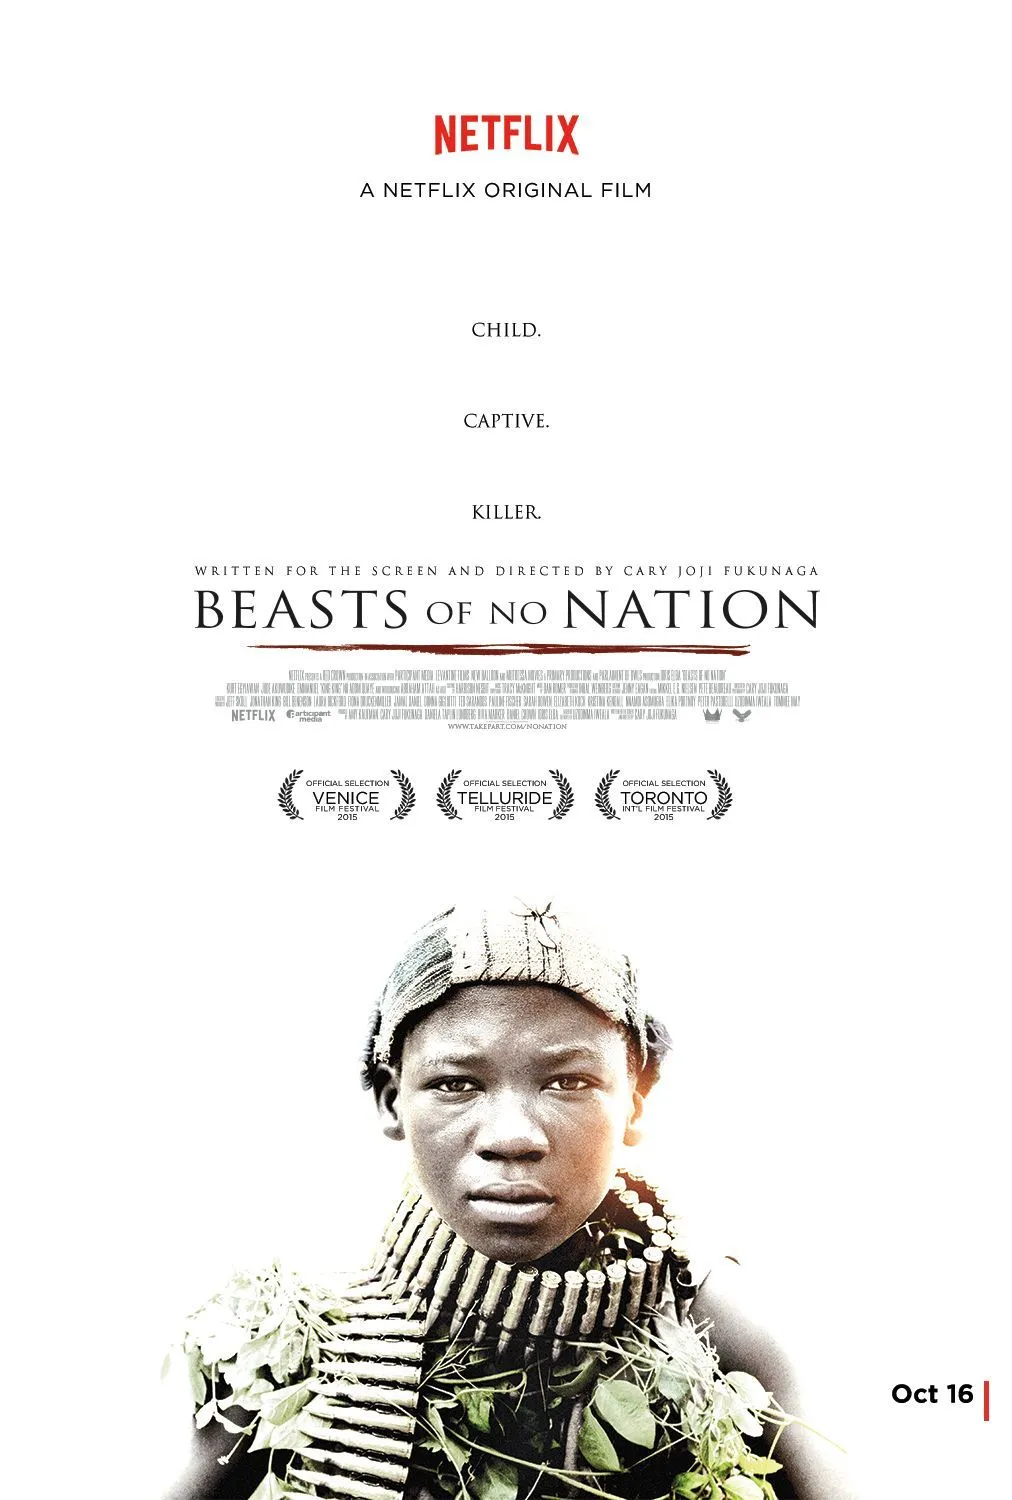 Cary Joji Fukunaga, Beasts Of No Nation, 2015.